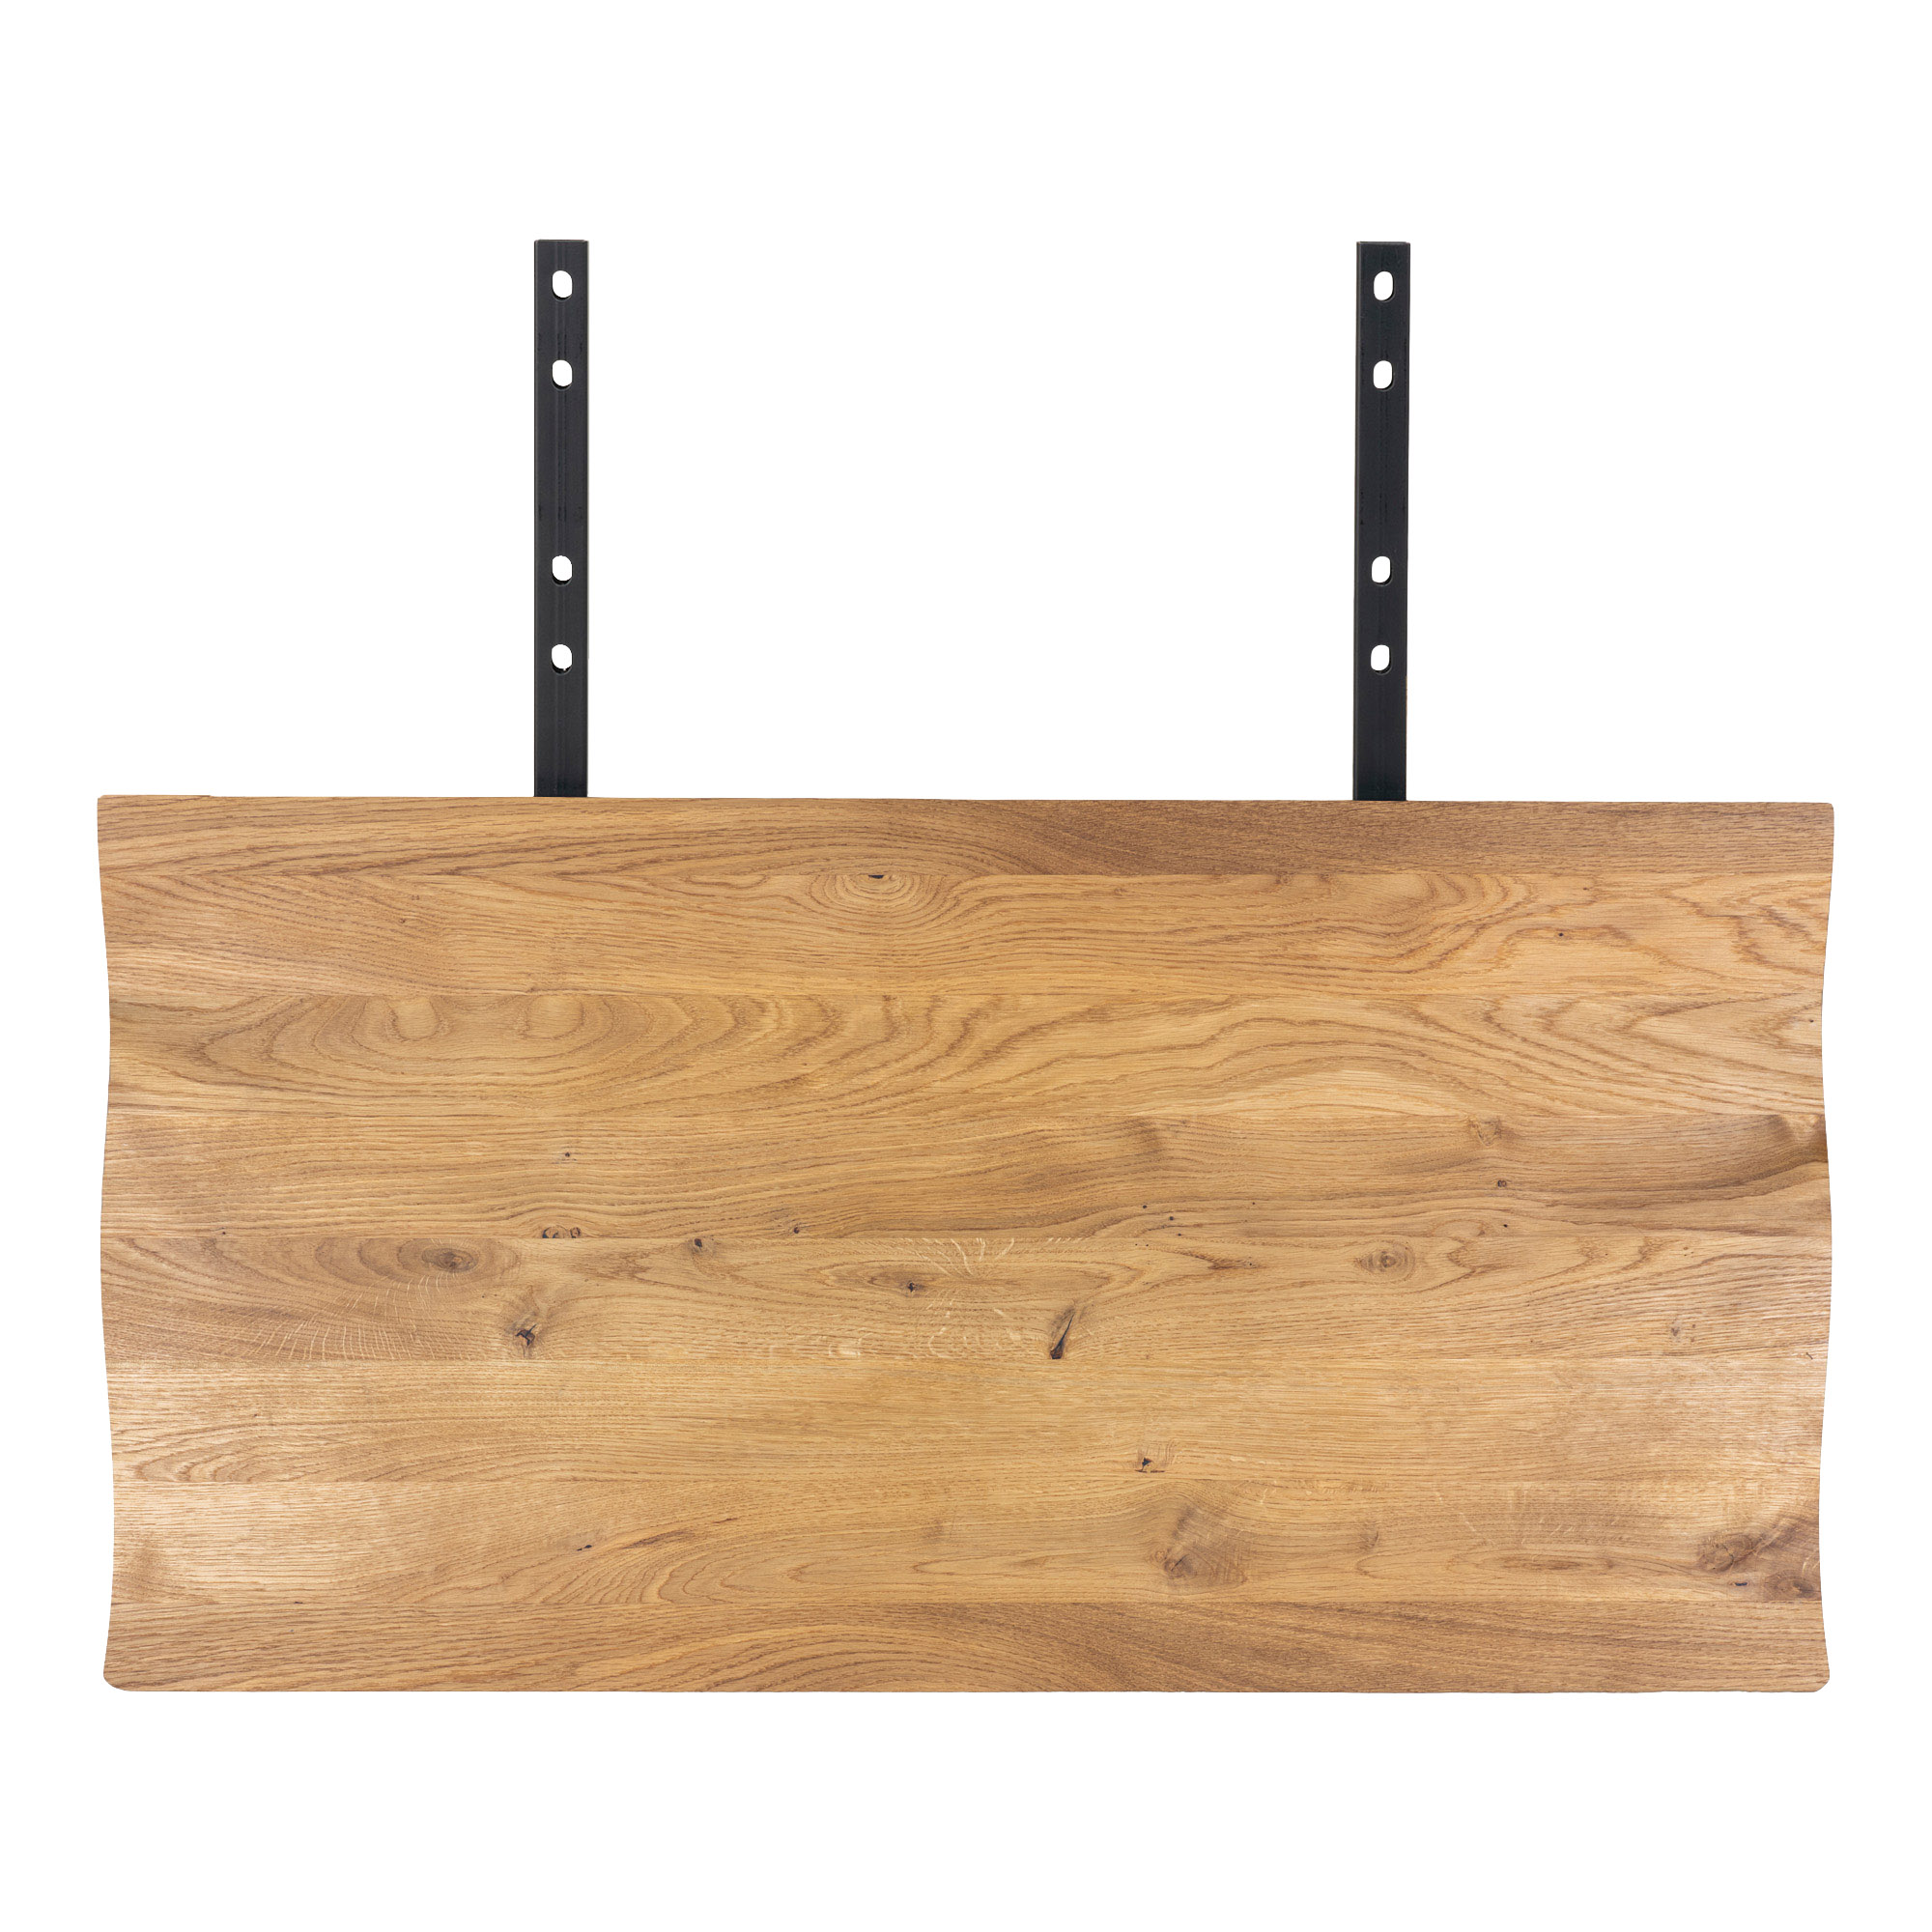 5: Juva - Spisebord i olieret  eg, 95 x 240 cm, med eller uden tillægsplader Med 2 tillægsplader